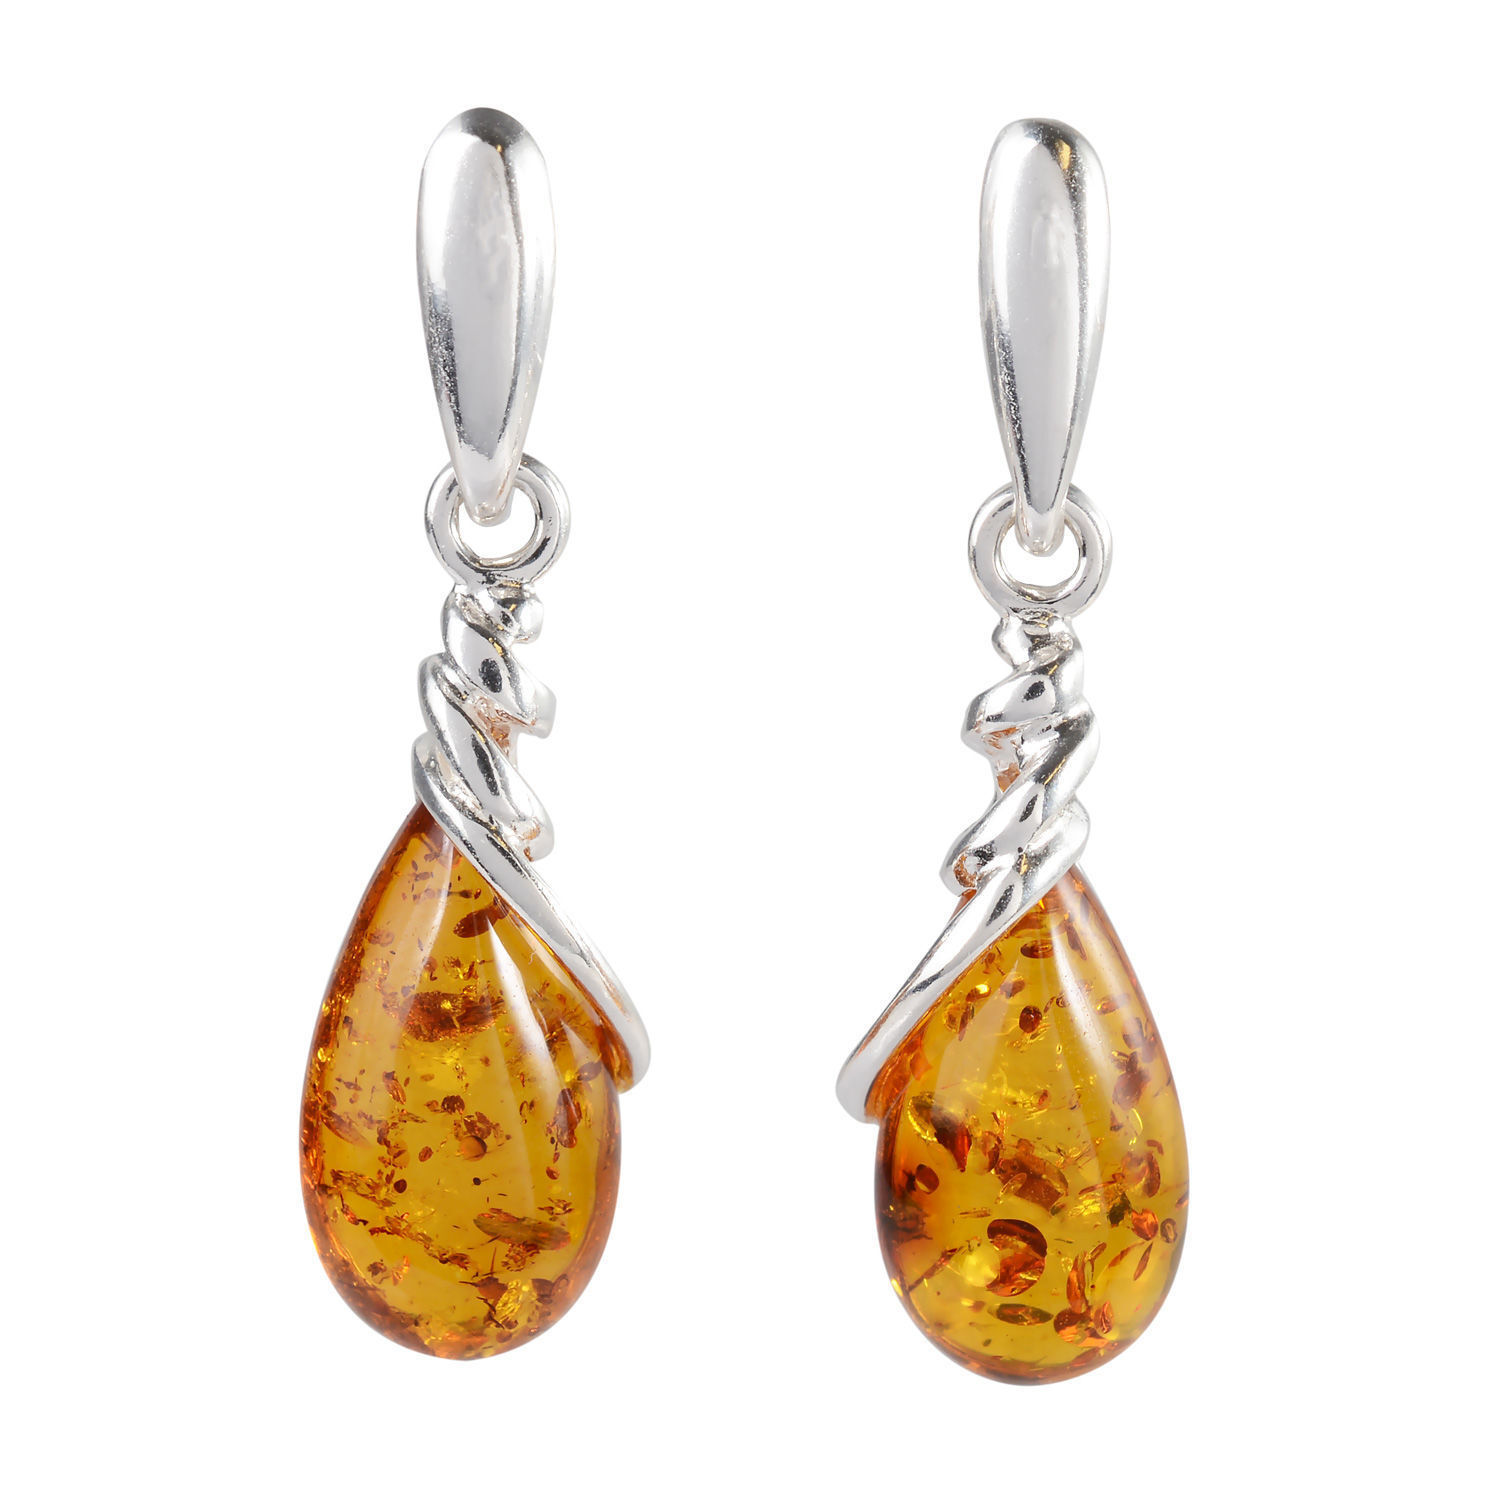 Teardrop Earrings Baltic Amber Gold Stud Earrings Natural Amber Amber Earrings Baltic Amber Earrings